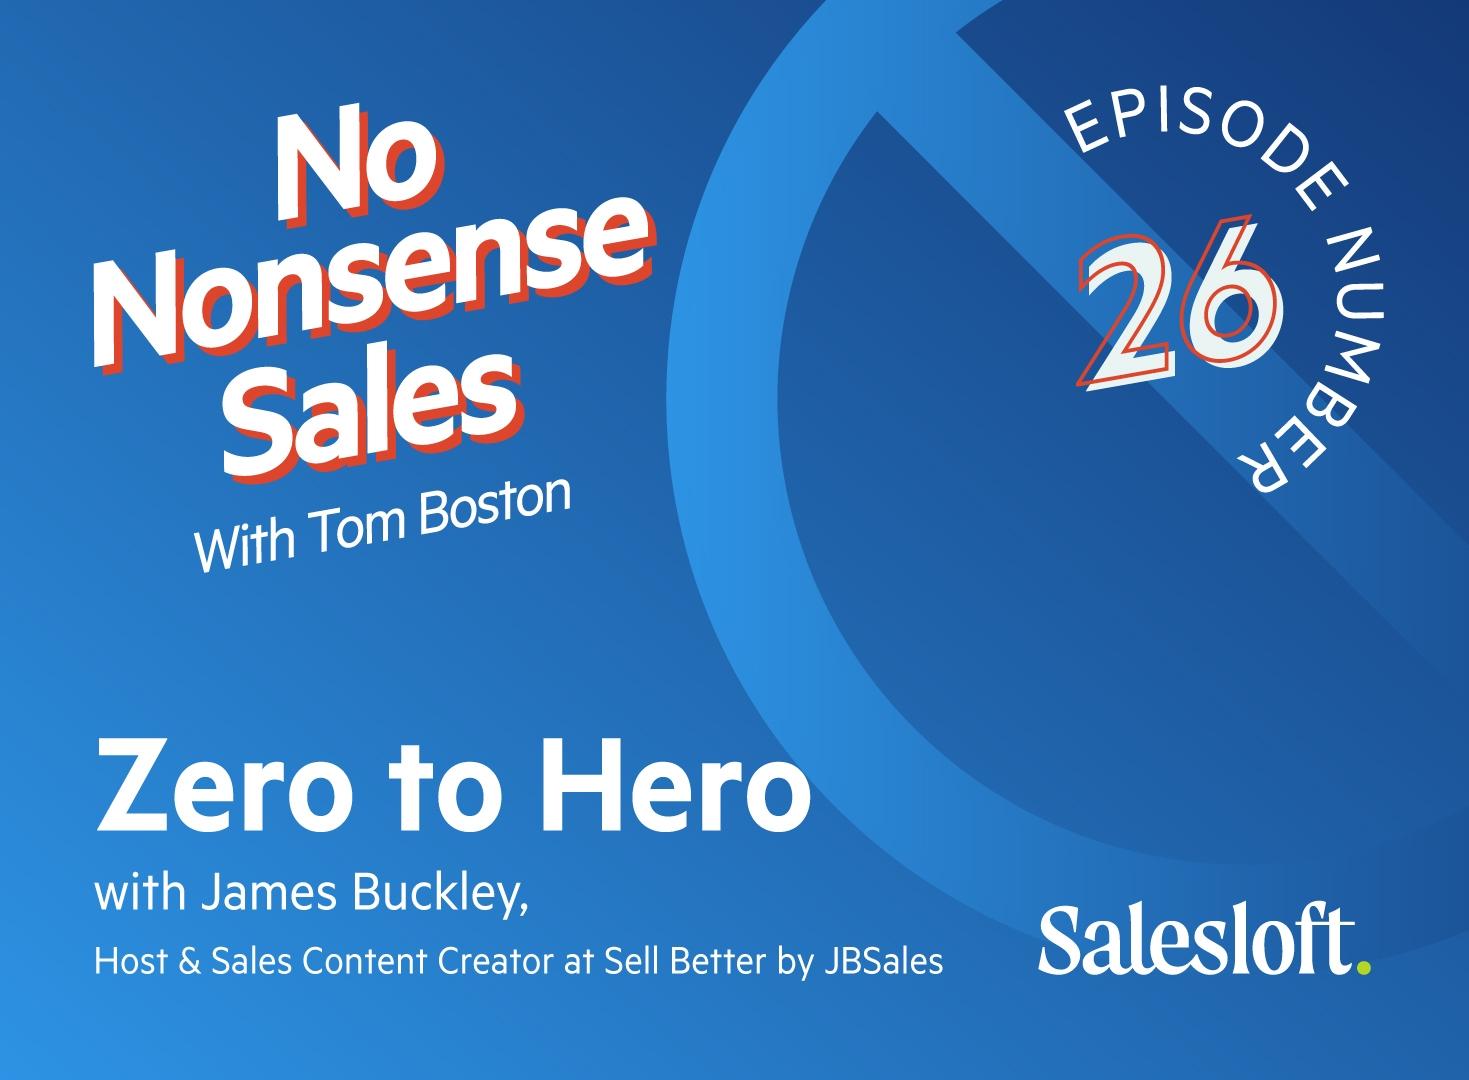 No Nonsense Sales Episode 26